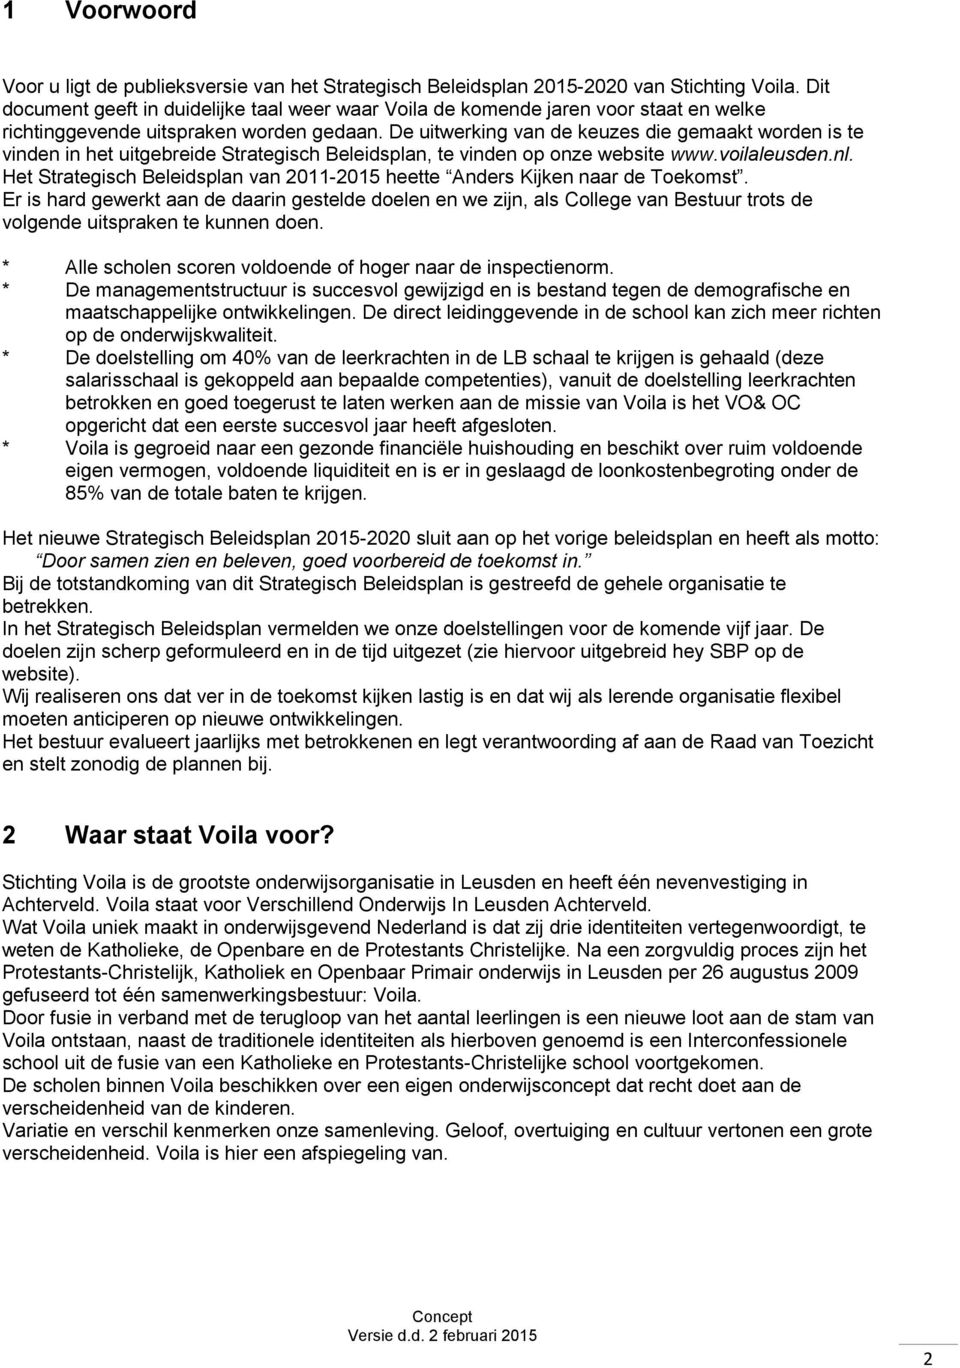 De uitwerking van de keuzes die gemaakt worden is te vinden in het uitgebreide Strategisch Beleidsplan, te vinden op onze website www.voilaleusden.nl.